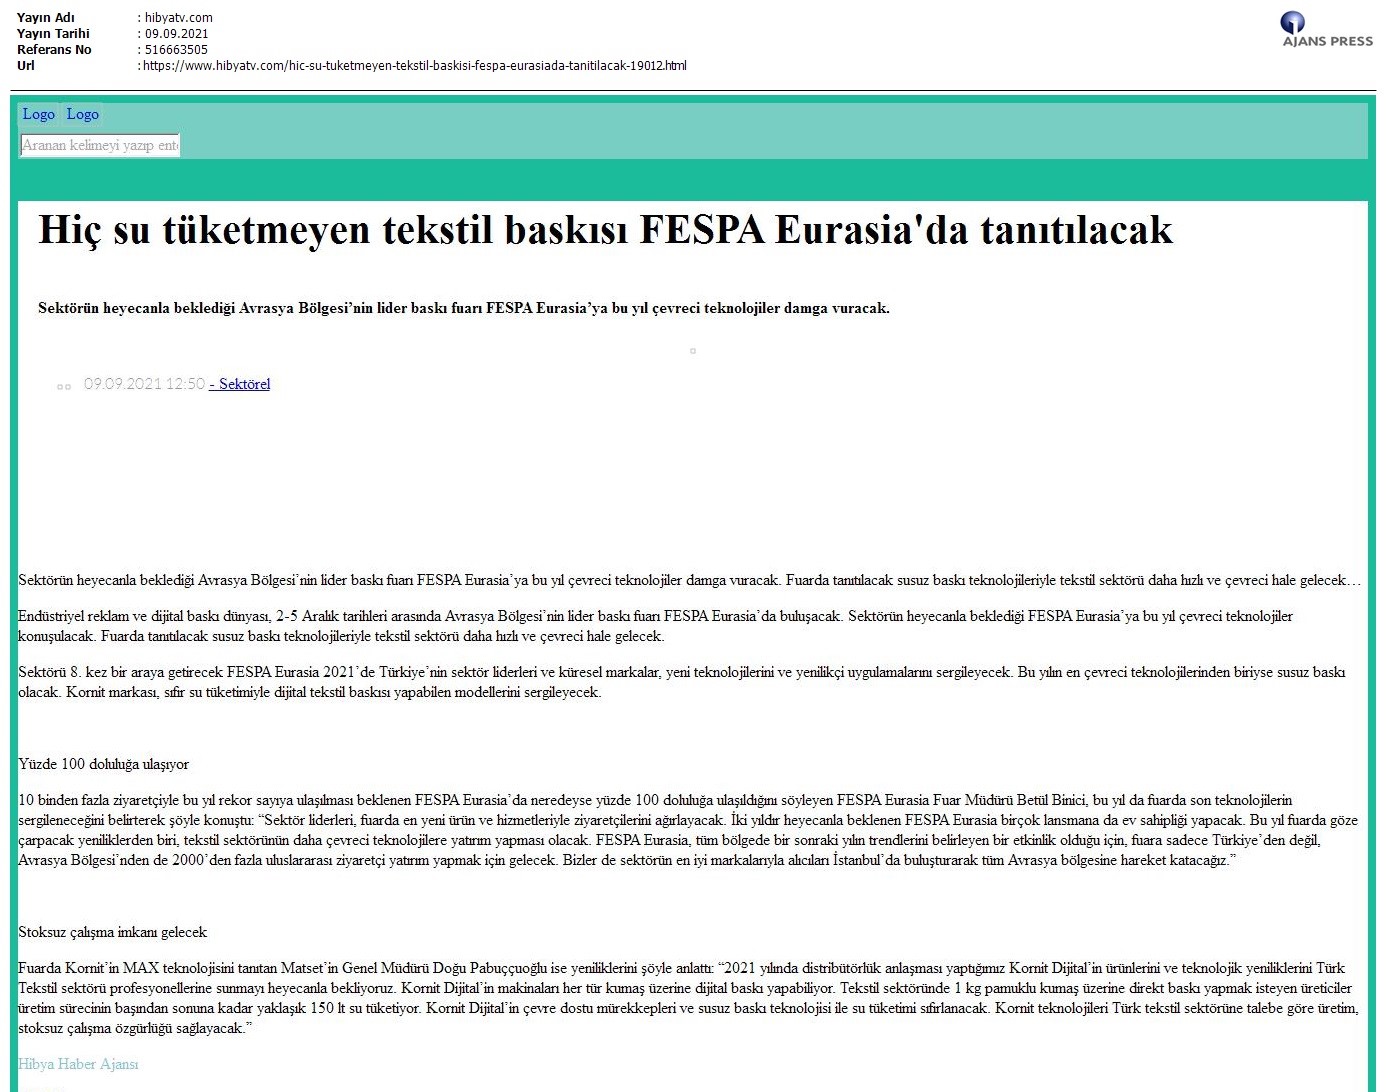 Hiç su tüketmeyen tekstil baskısı FESPA Eurasia'da tanıtılacak